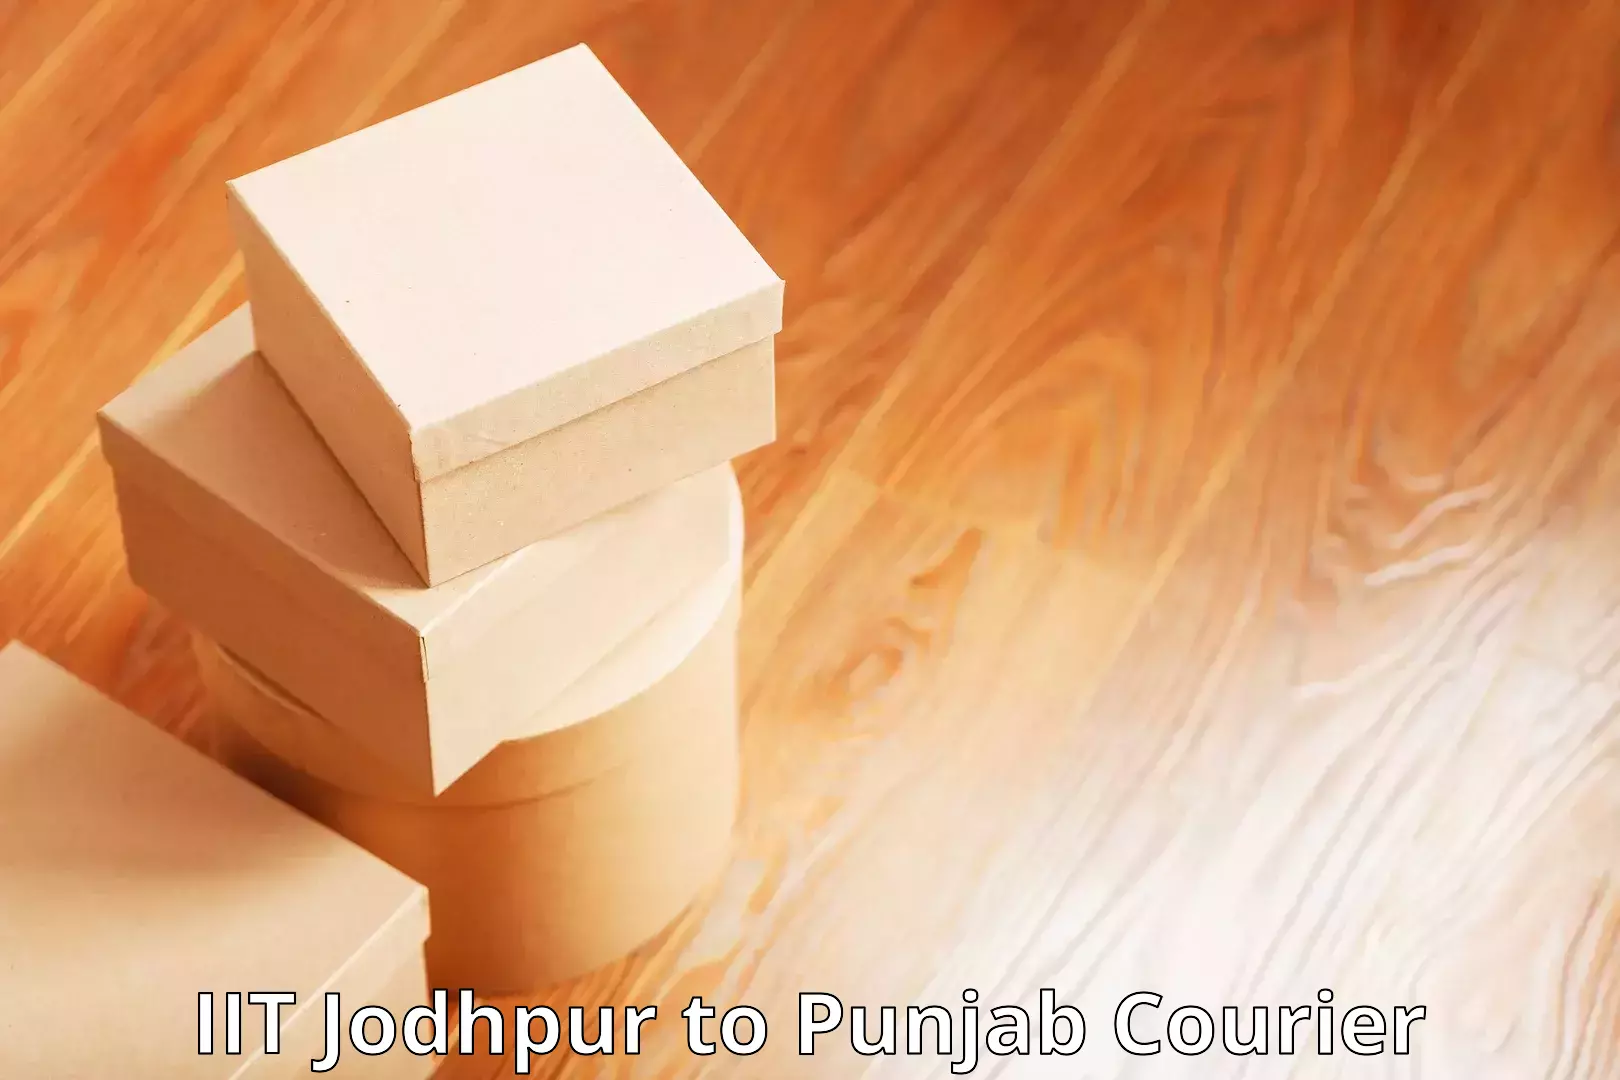 On-call courier service IIT Jodhpur to Raikot